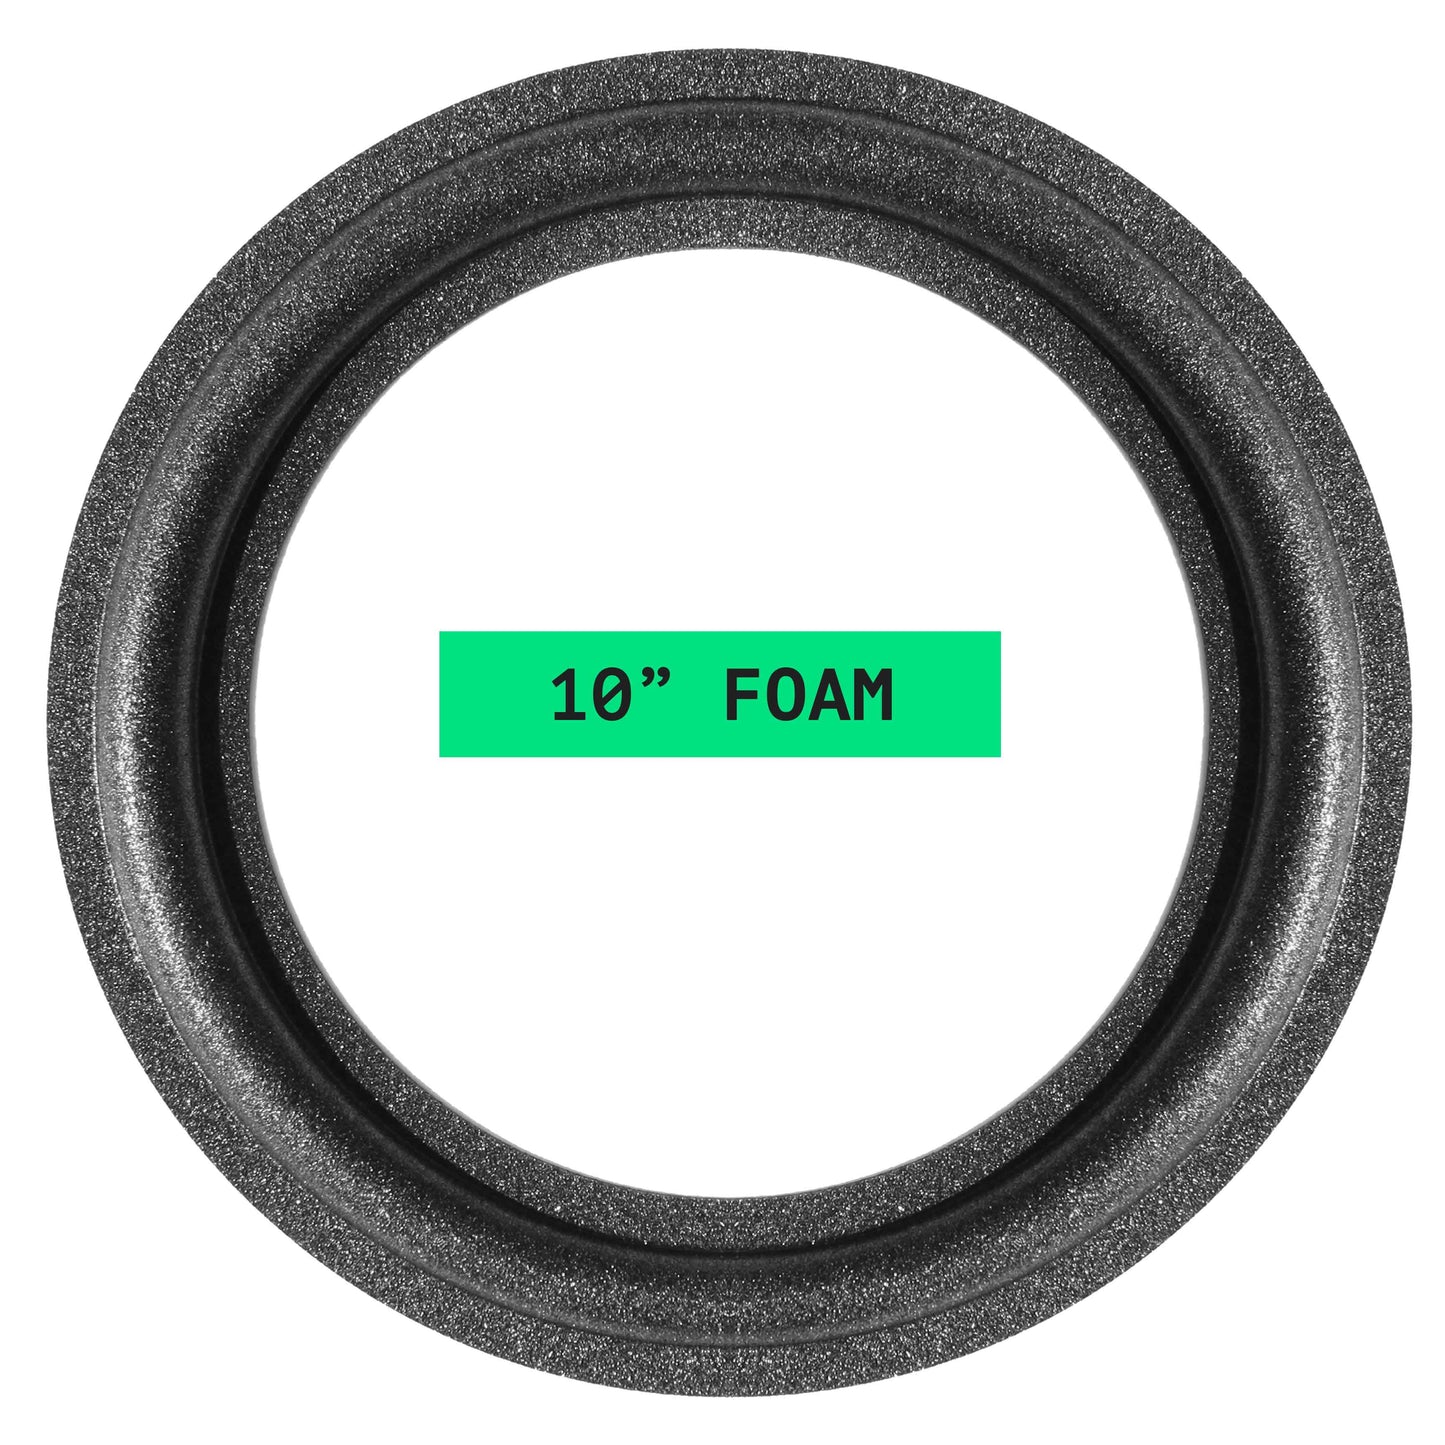 Sansui 10" Foam Repair Kit - OD:247MM ID:177MM